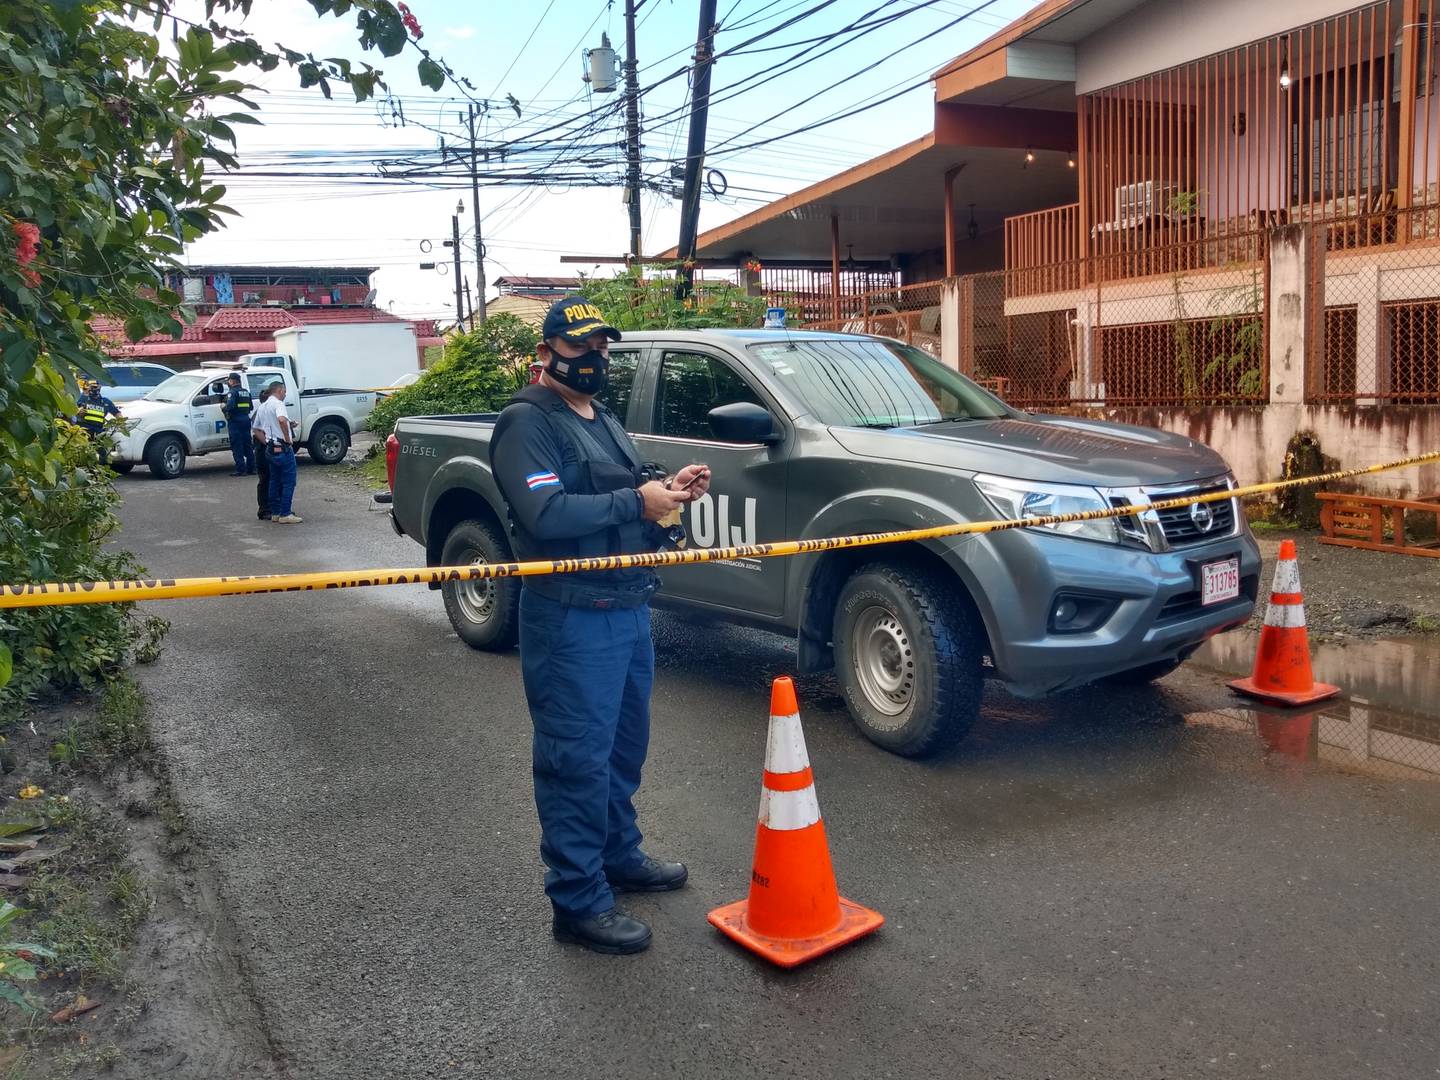 El más reciente asesinato en Limón ocurrió el lunes en barrio Las Palmeras, donde perdió la vida José Mauricio Zúñiga, de 34 años. Foto: Raúl Cascante.